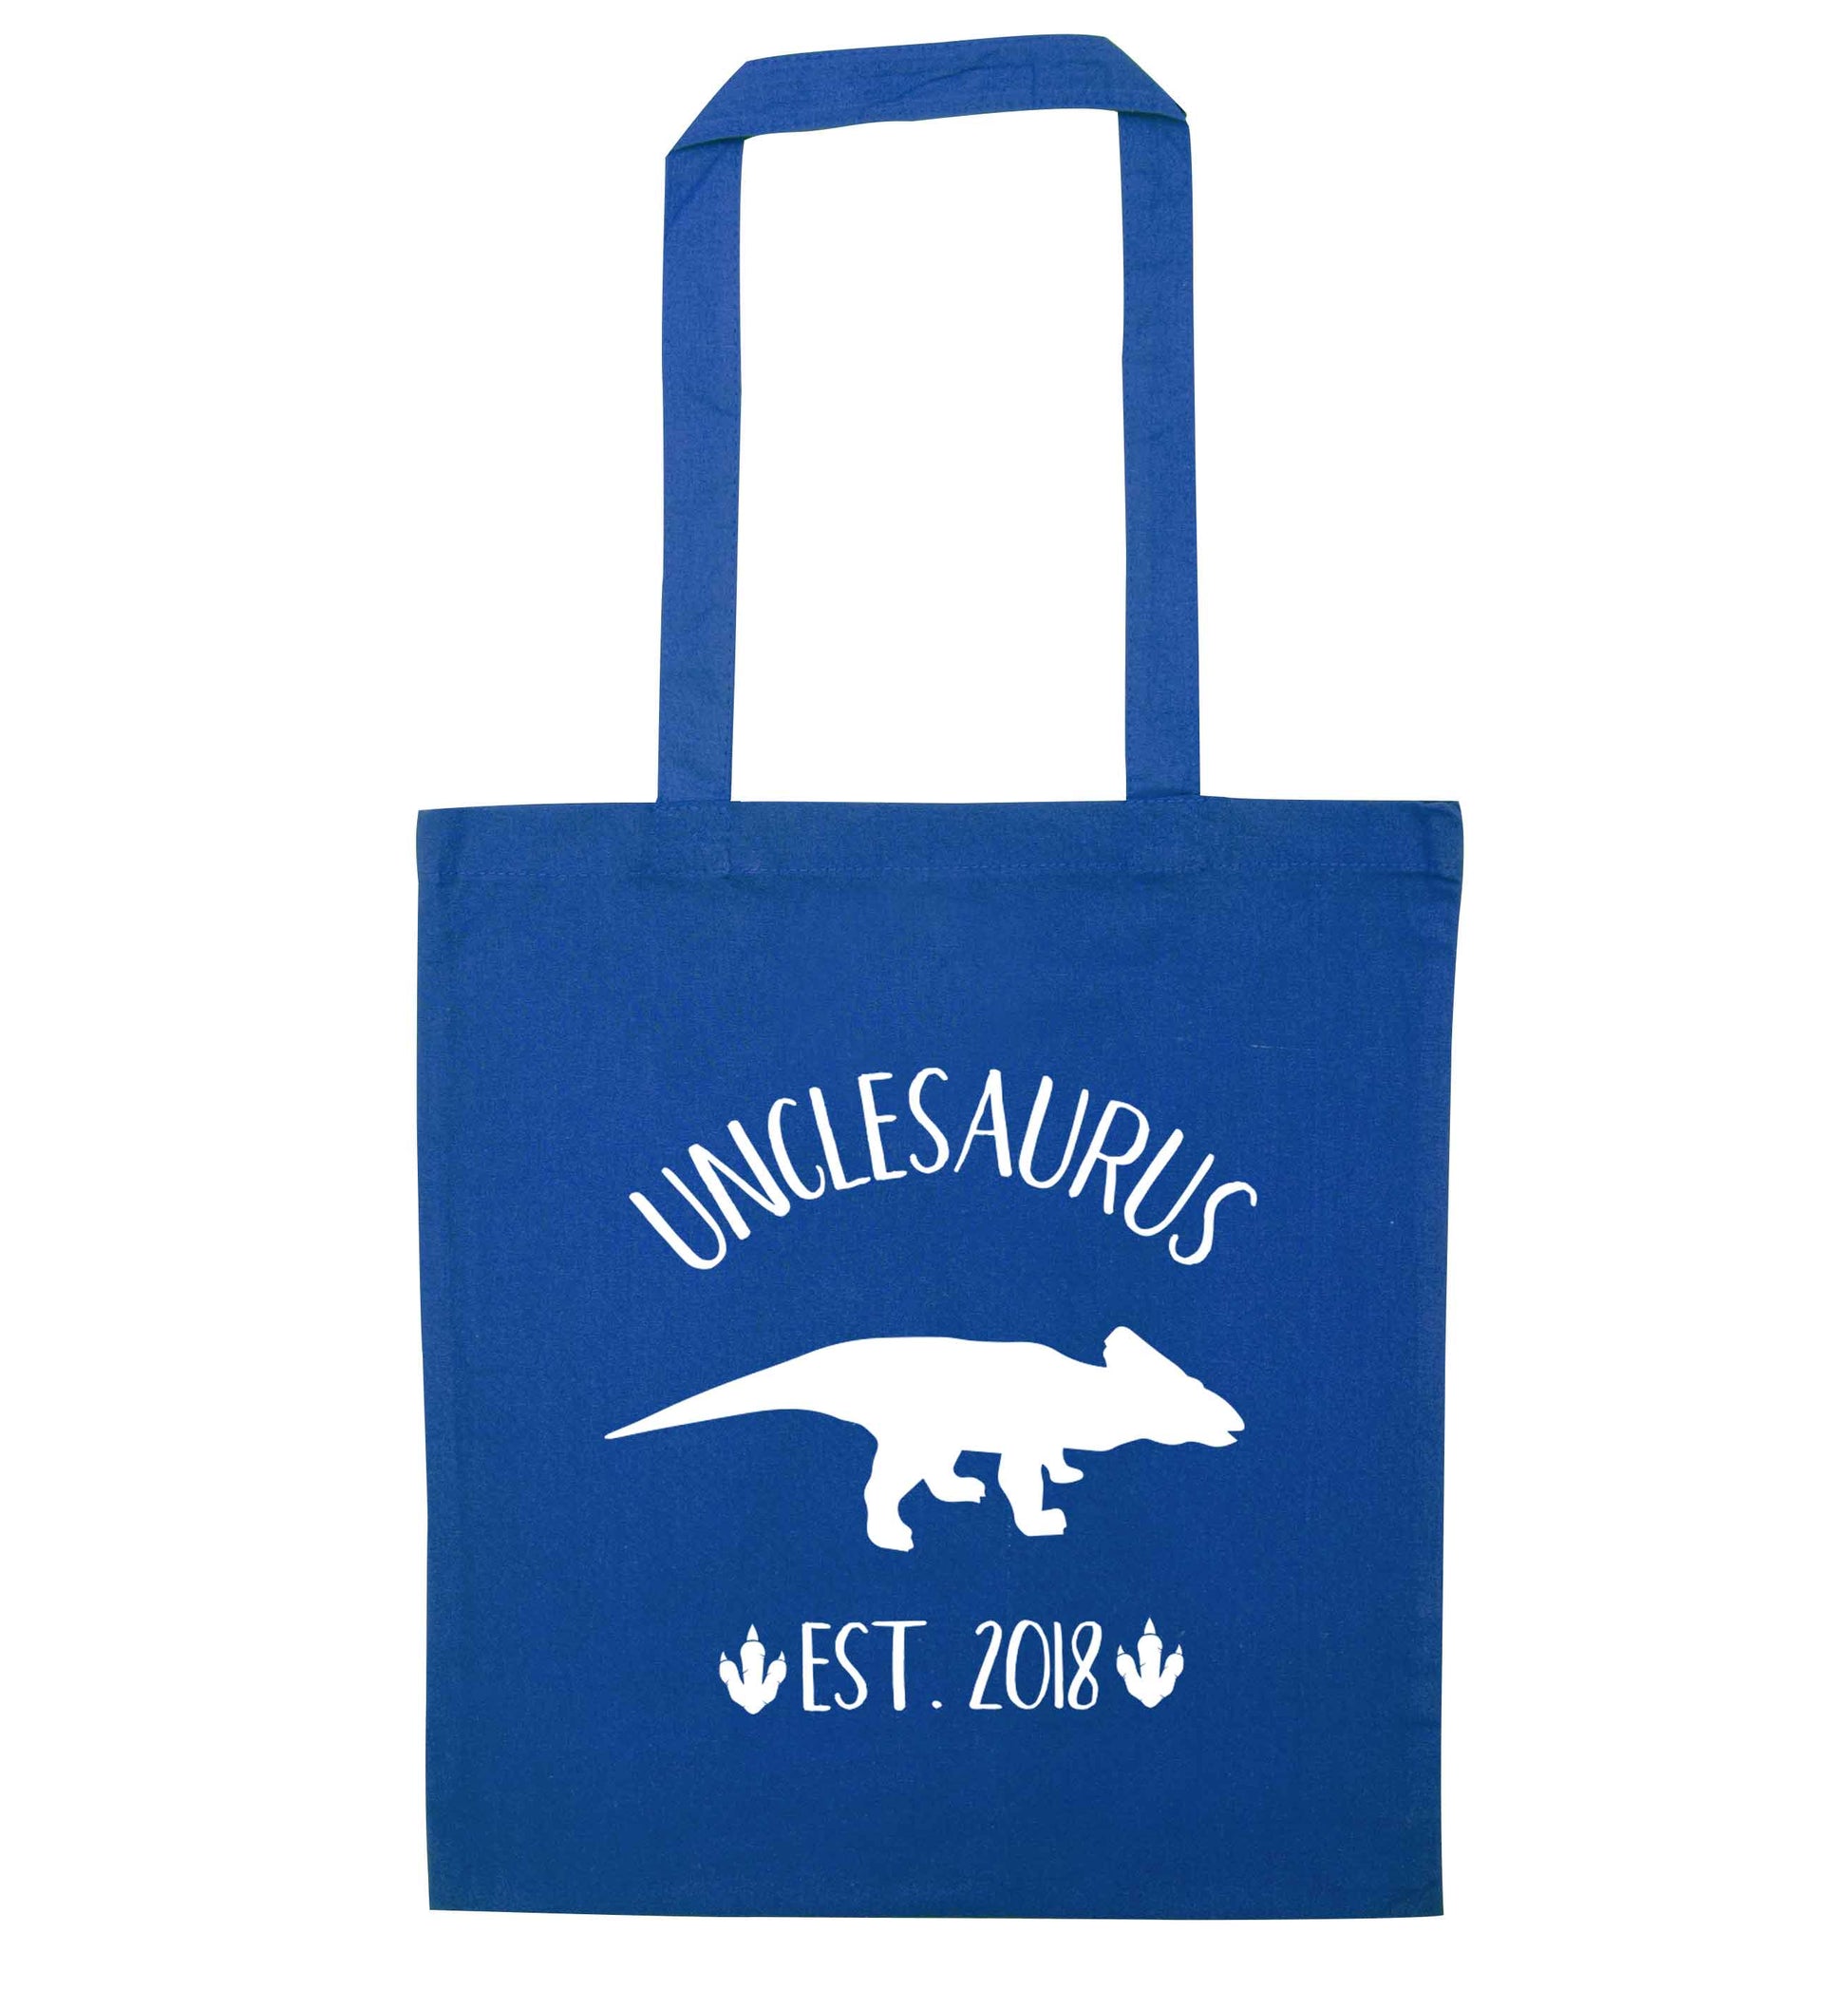 Personalised unclesaurus since (custom date) blue tote bag